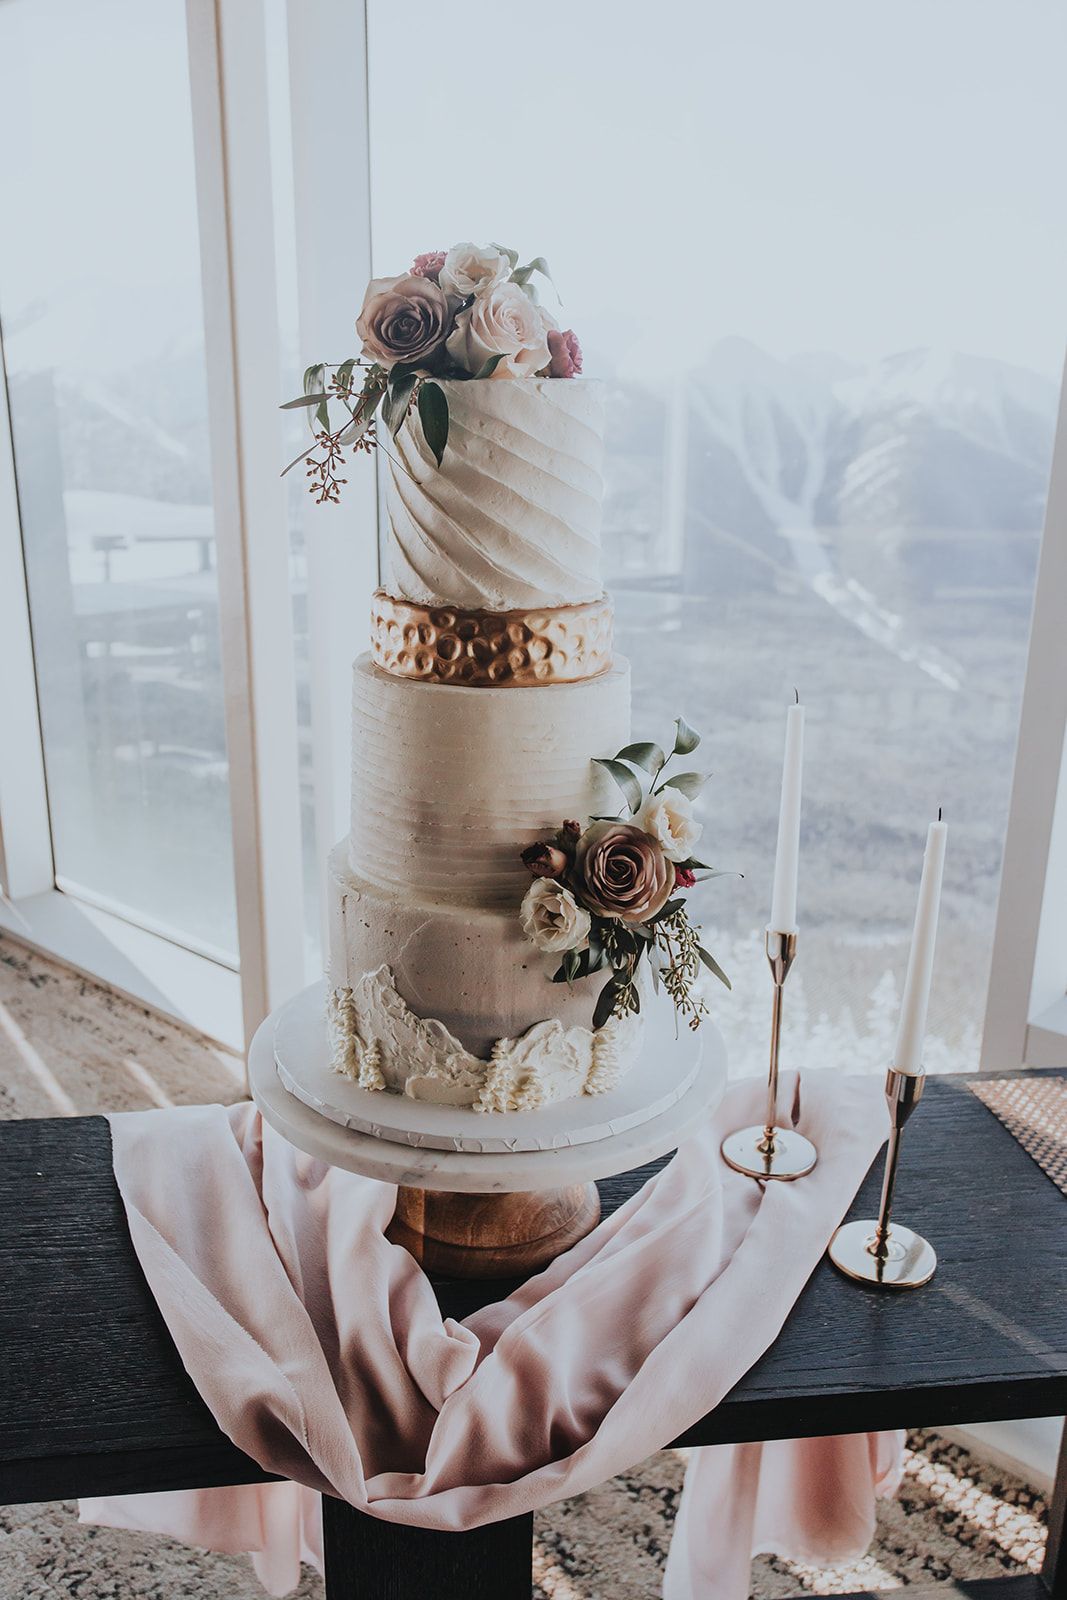 Sky Bistro Banff Wedding - Featured on Bronte Bride, winter wedding inspiration, wedding cake